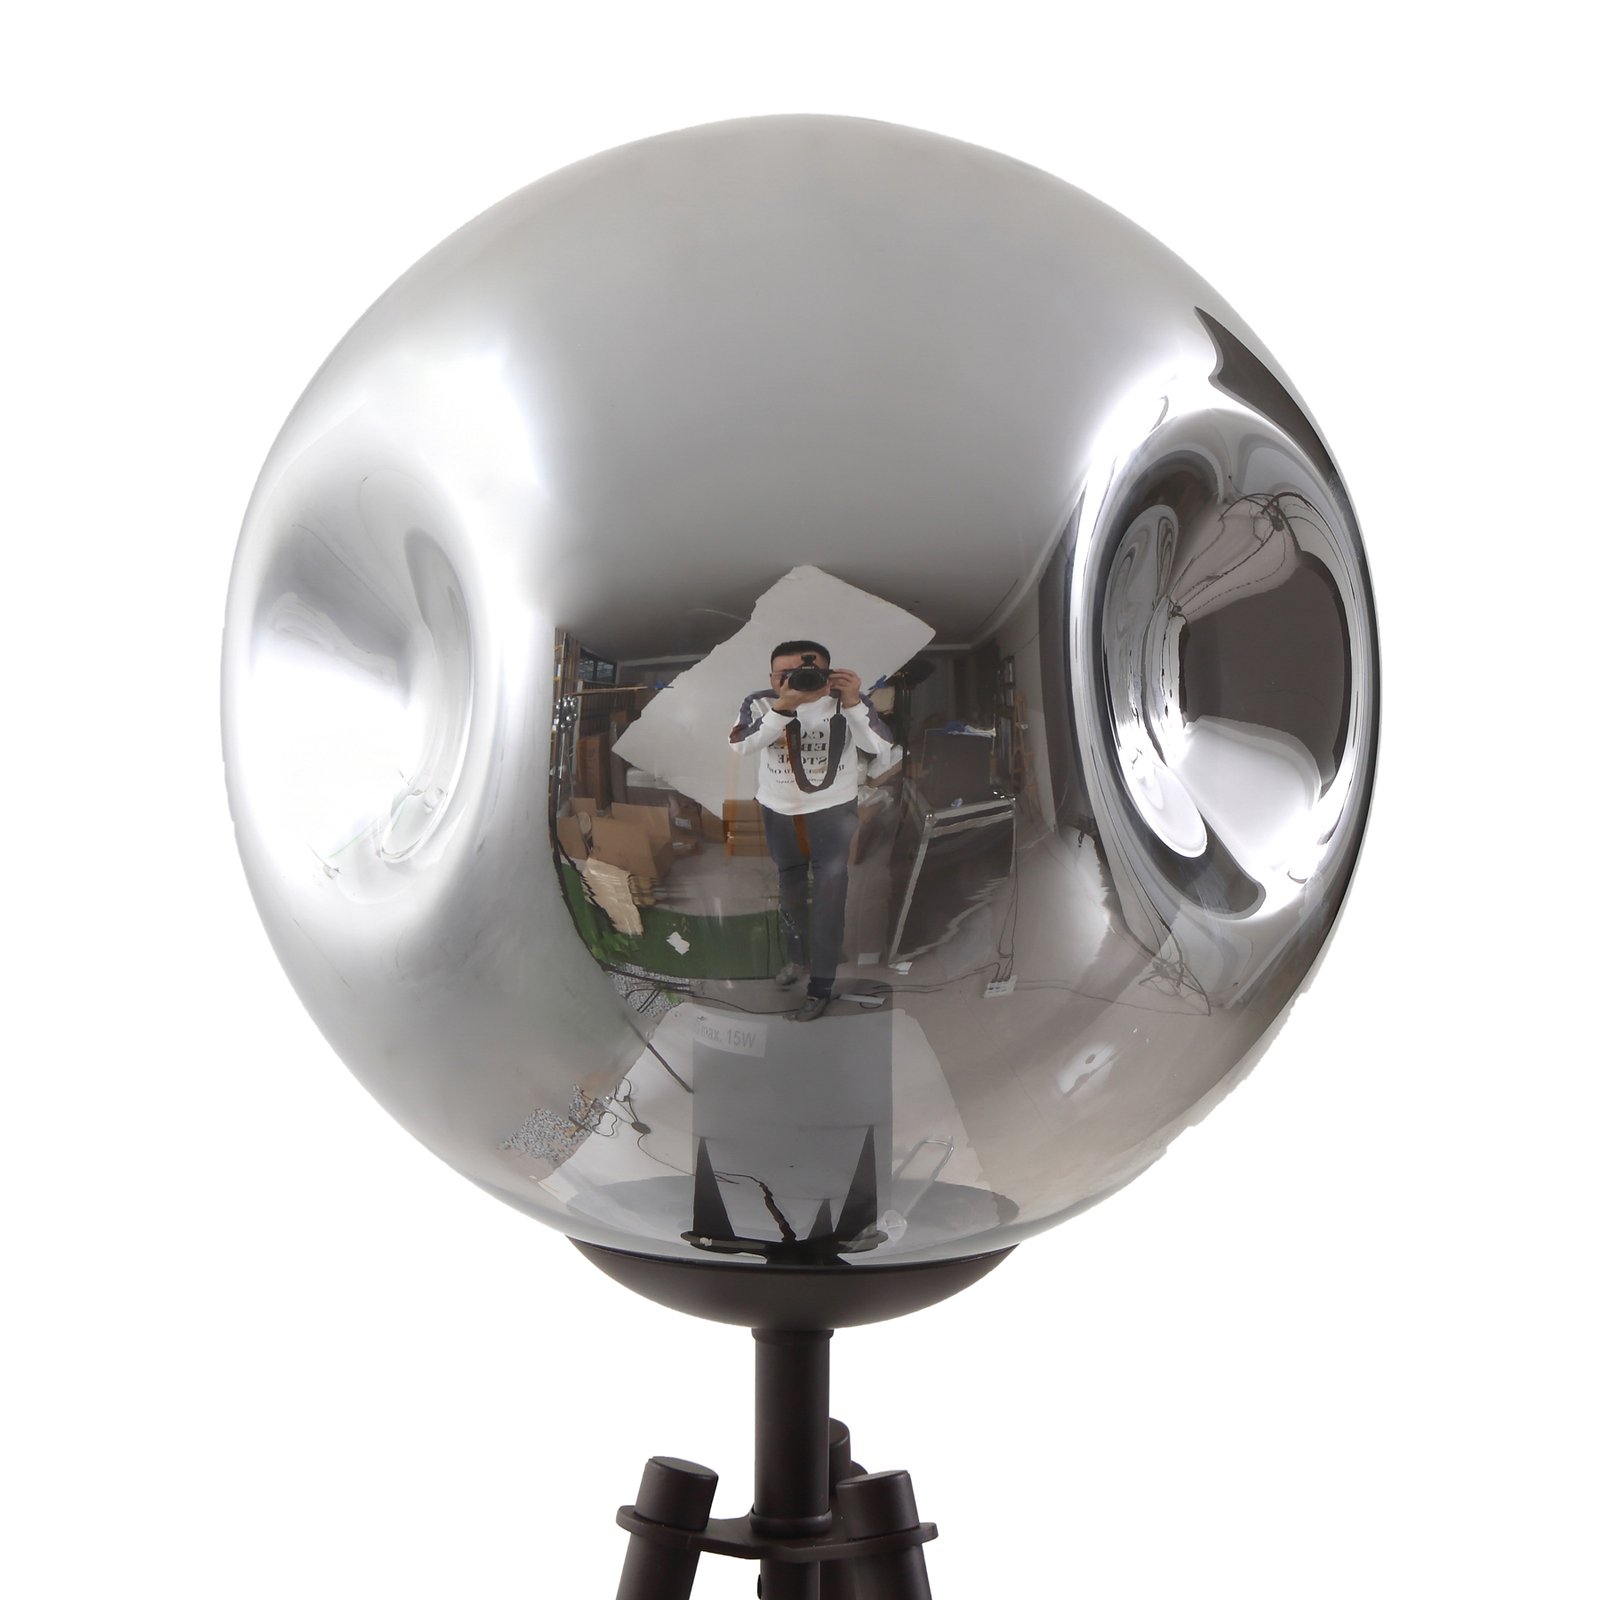 Lindby állólámpa Valentina, E27, füstszürke, üveg, 150 cm